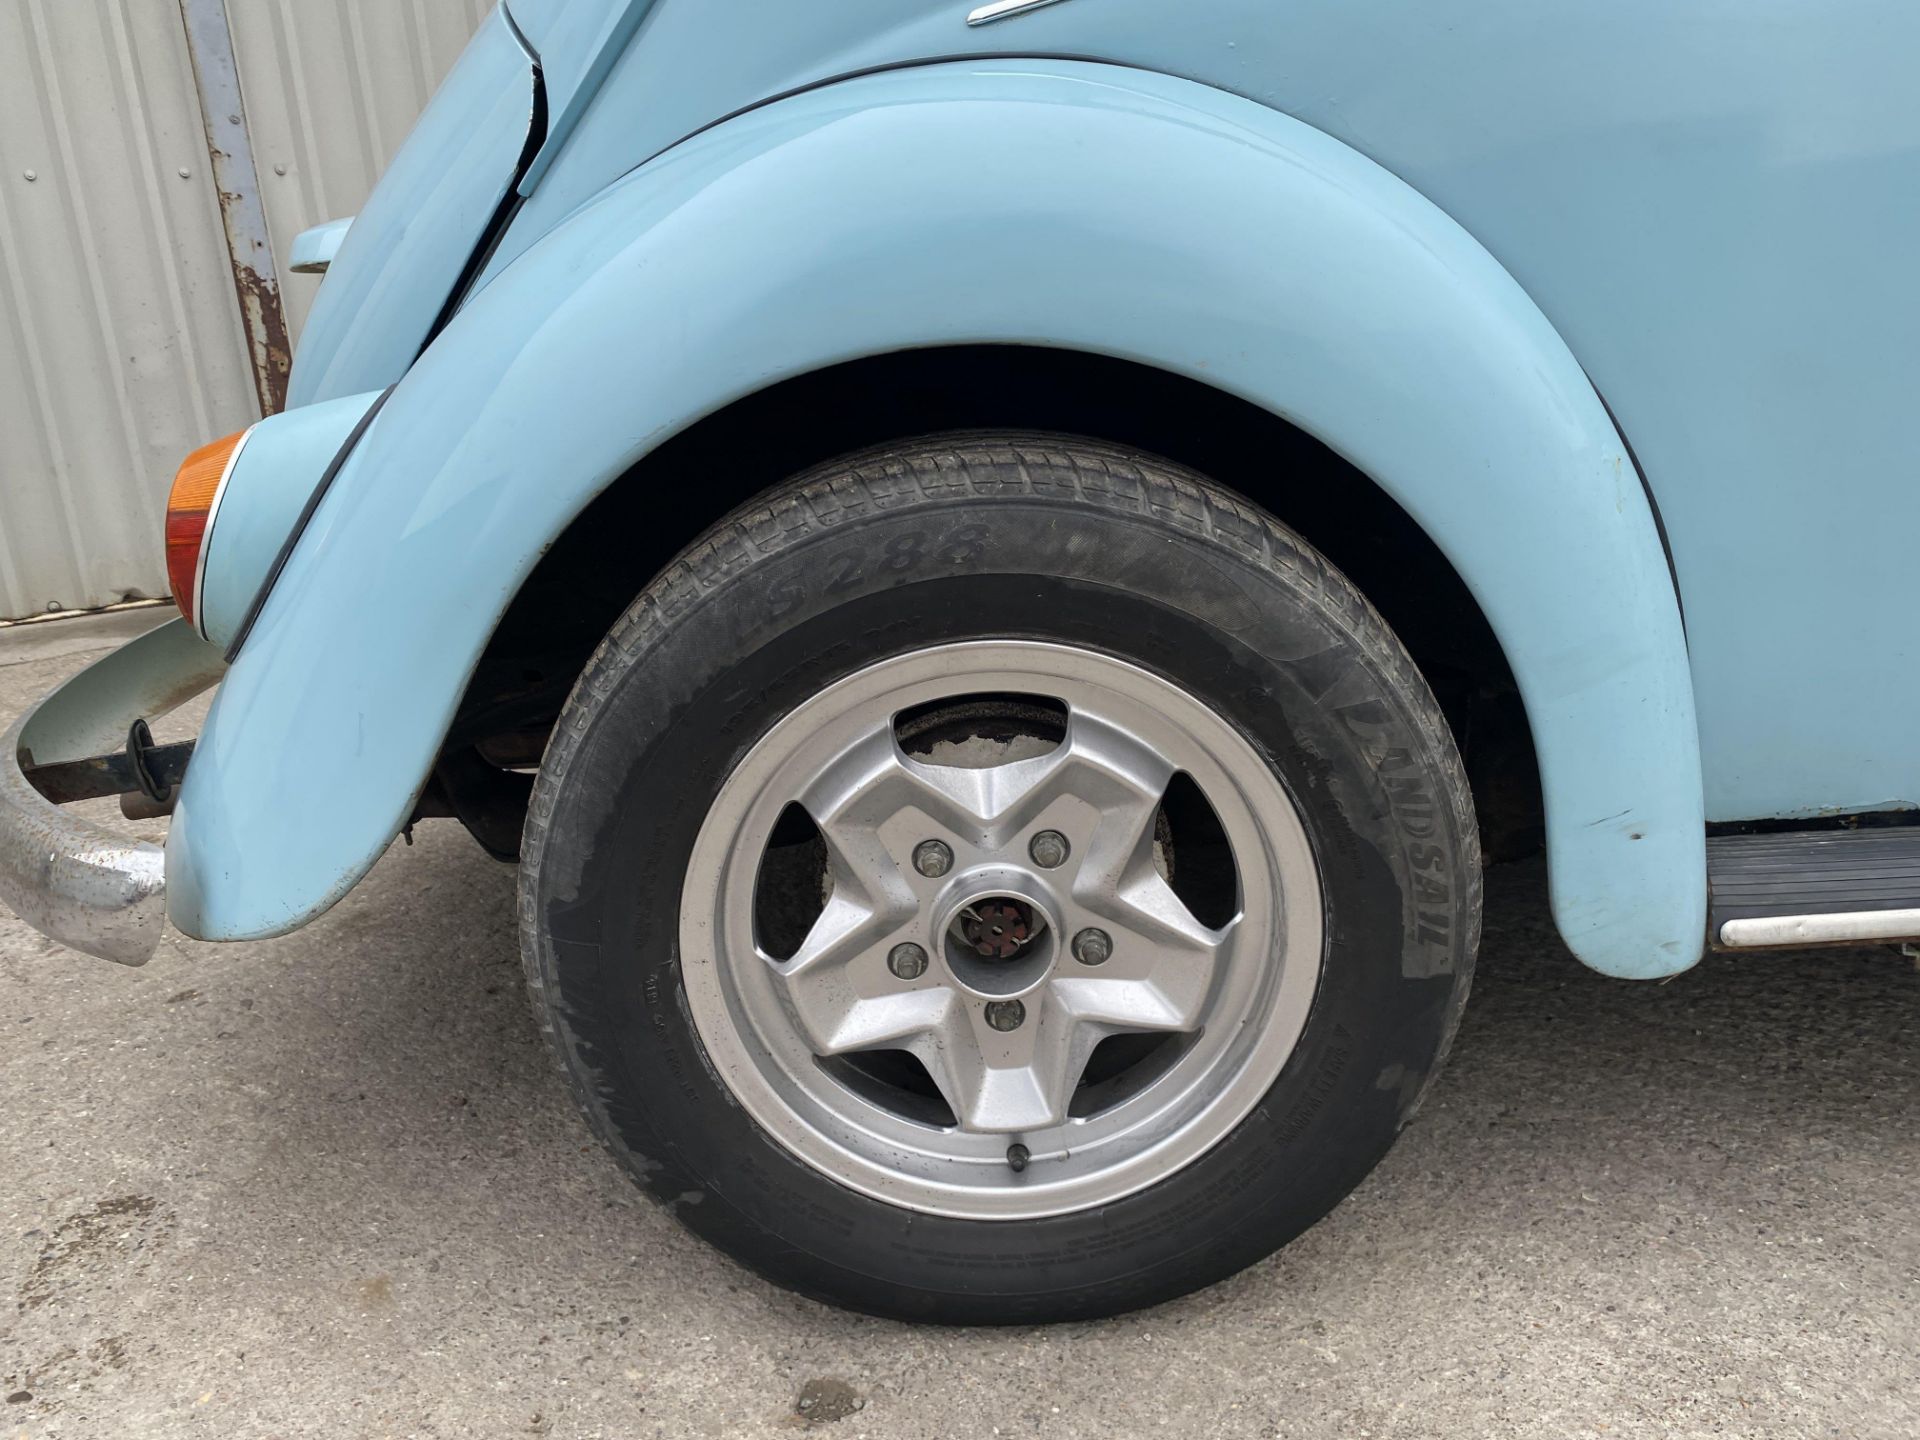 Volkswagen Beetle - Image 15 of 31